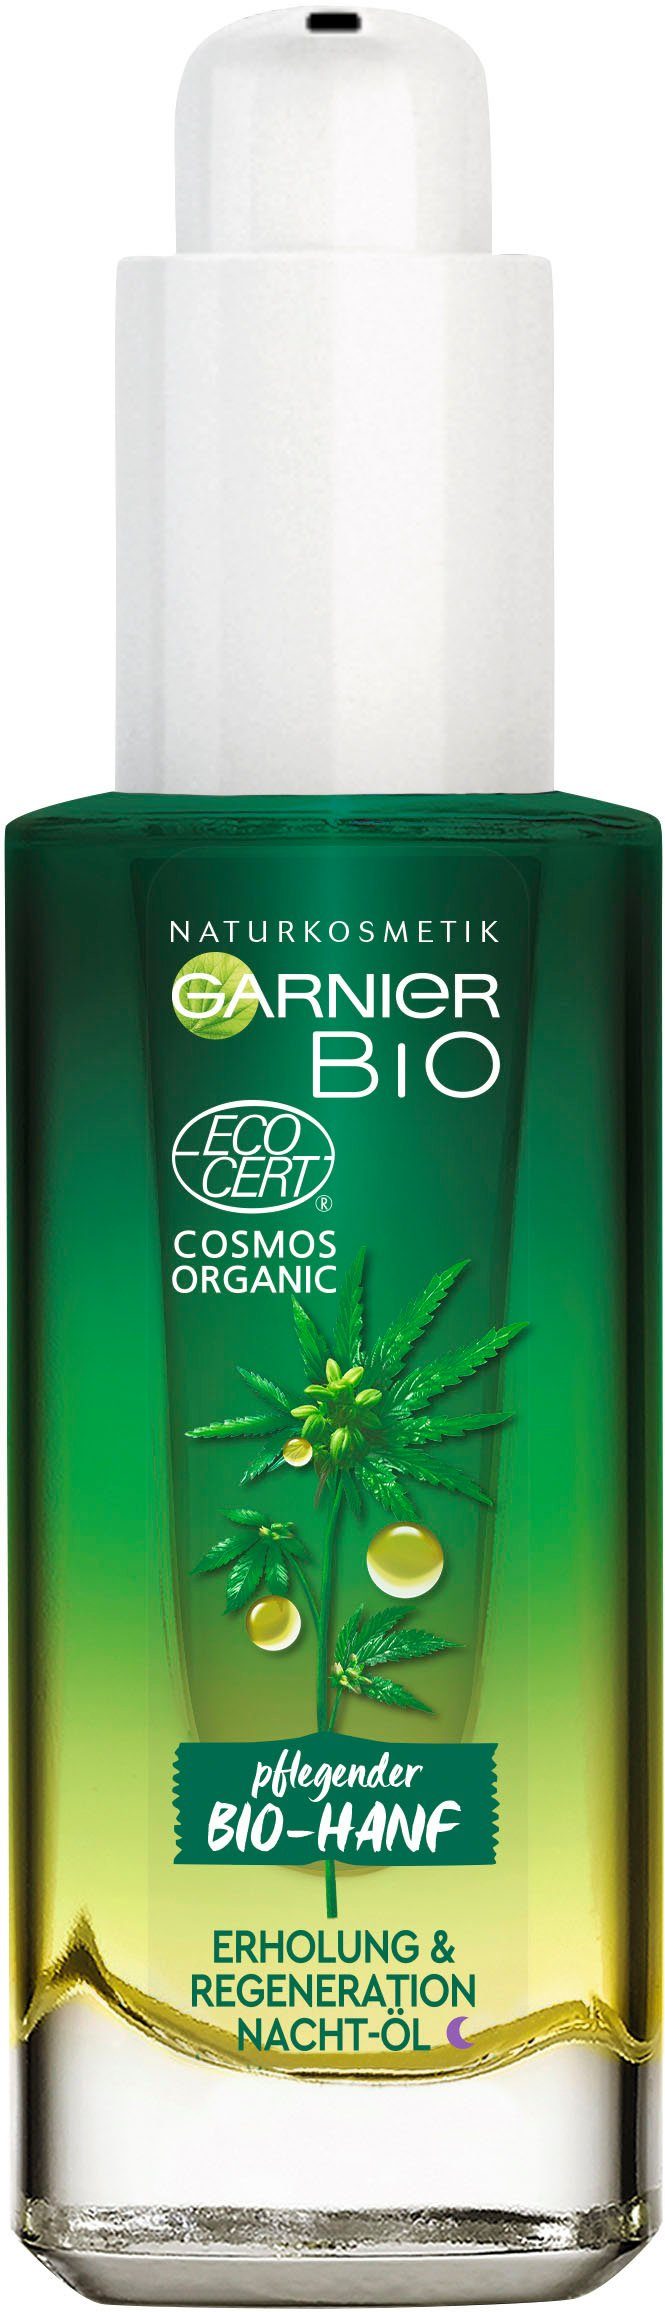 GARNIER Gesichtsöl »Bio-Hanf Erholung & Regeneration Nacht-Öl«,  Naturkosmetik online kaufen | OTTO